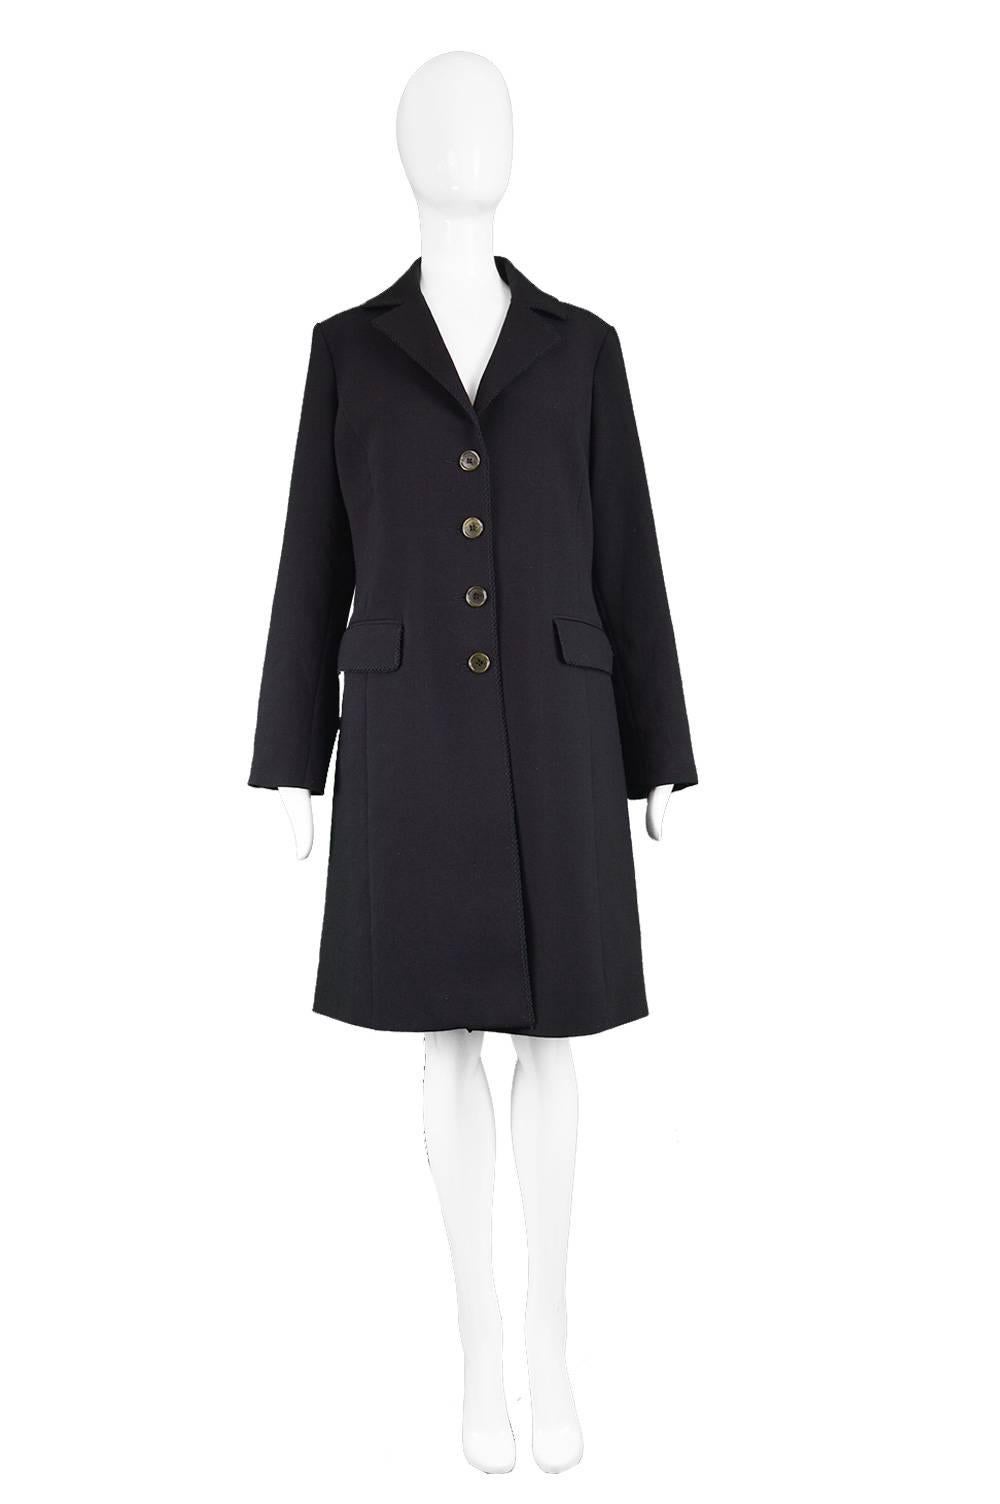 Romeo Gigli Vintage Women's Black Embroidered Trim Single Breasted Coat

Estimated Size: UK 12-14/ US 8-10/ EU 40-42. Please check measurements. 
Bust - 38” / 96cm
Waist - 36” / 91cm
Hips - 42” / 106cm
Length (Shoulder to Hem) - 37” / 94cm
Shoulder